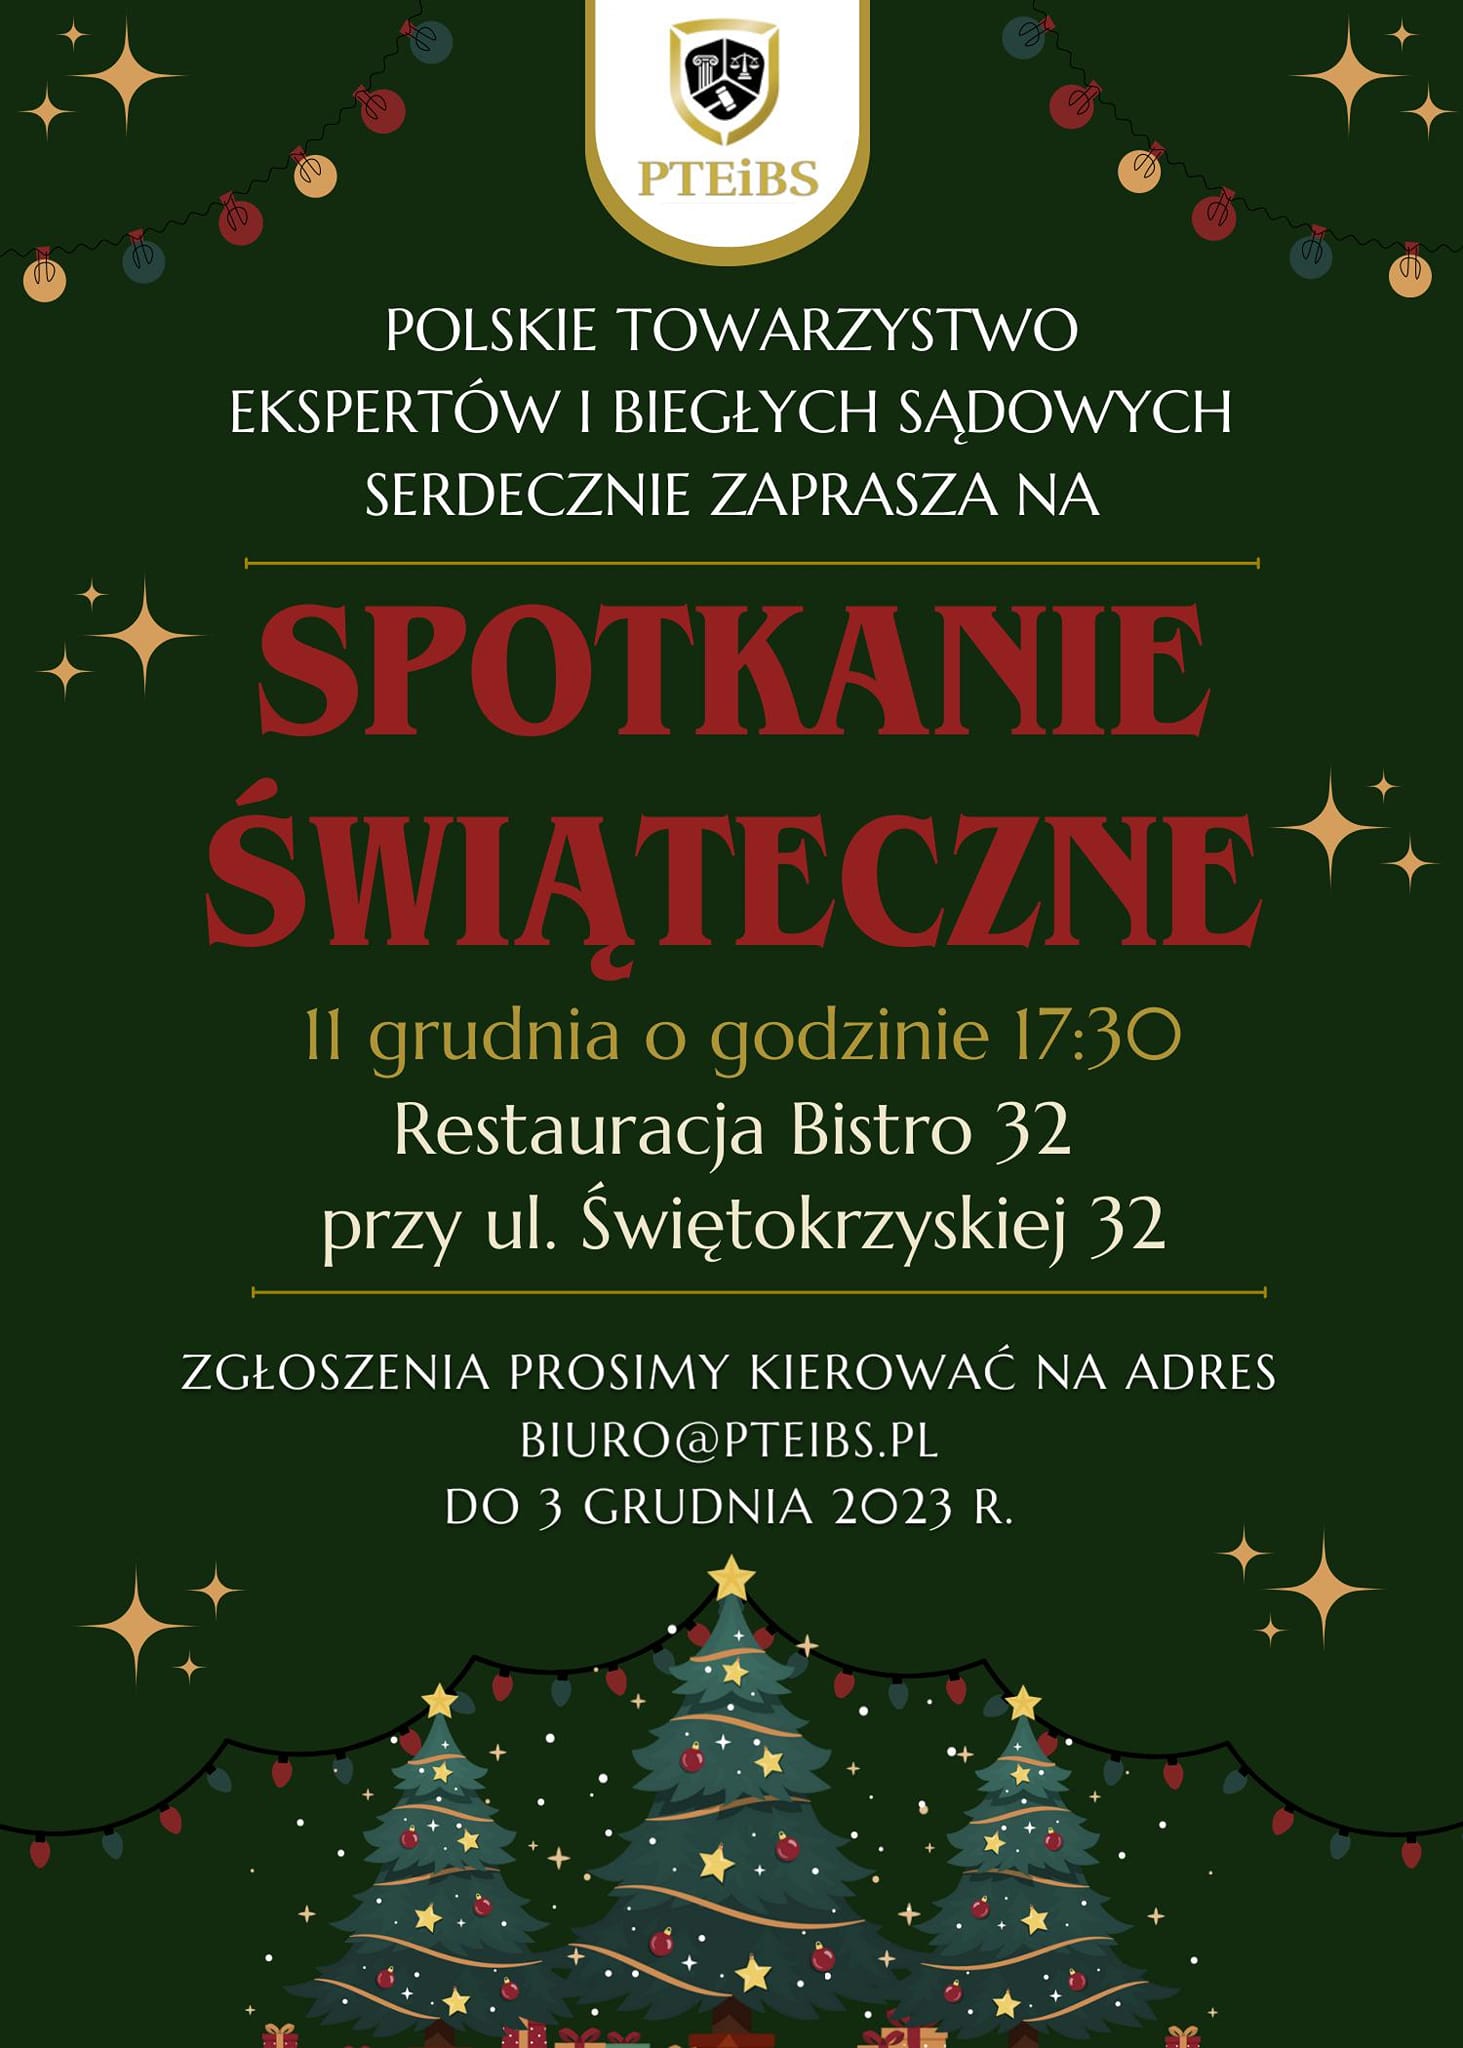 Spotkanie Świąteczne Polskiego Towarzystwa Ekspertów i Biegłych Sądowych